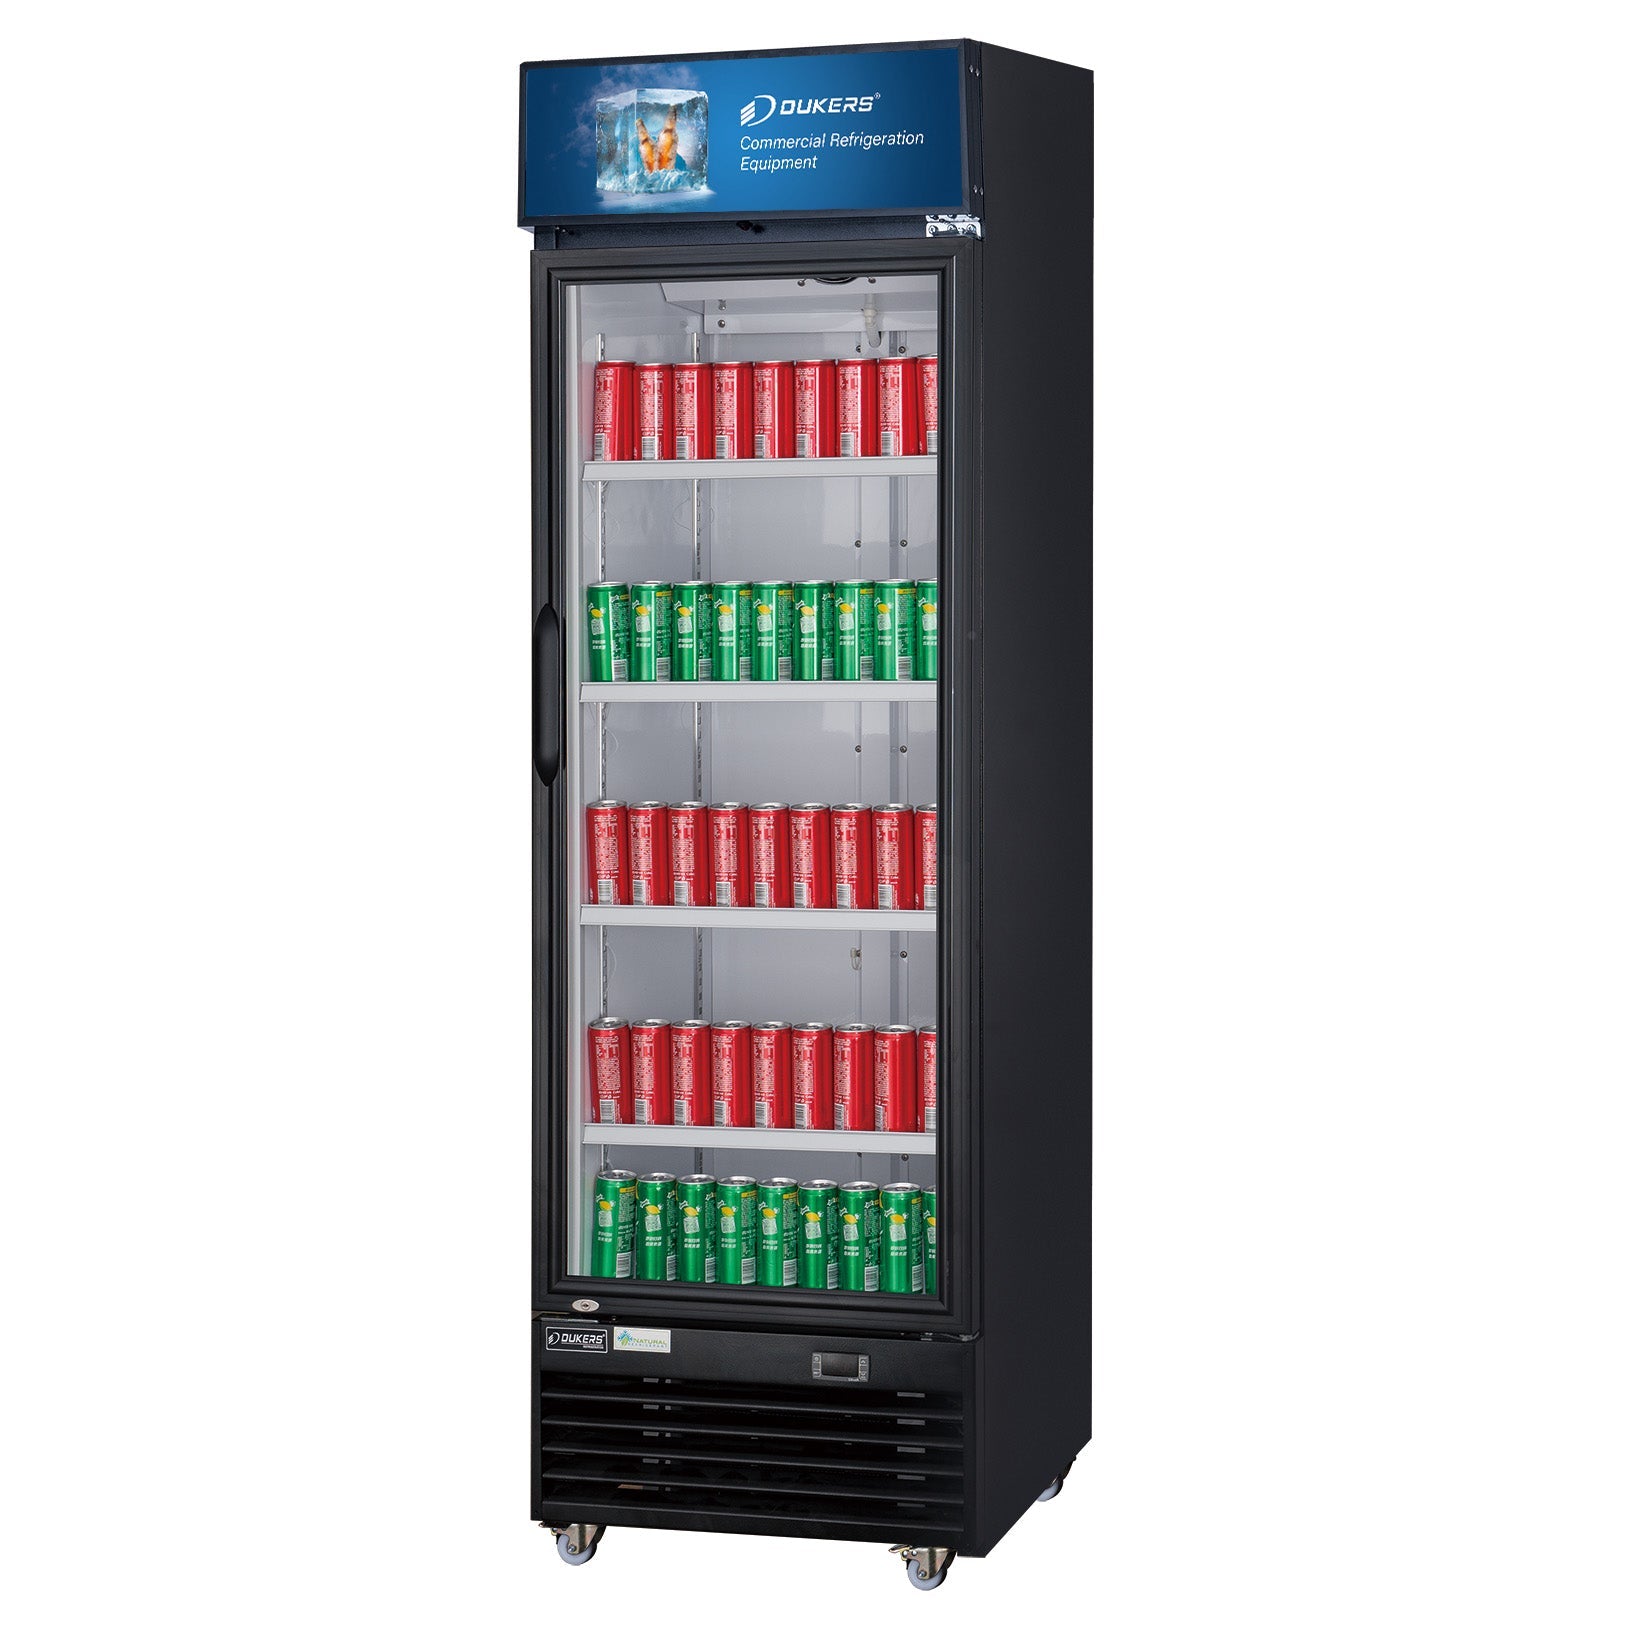 Dukers DSM-12R 11.4 cu. ft Glass Swing Door Merchandiser Refrigerator